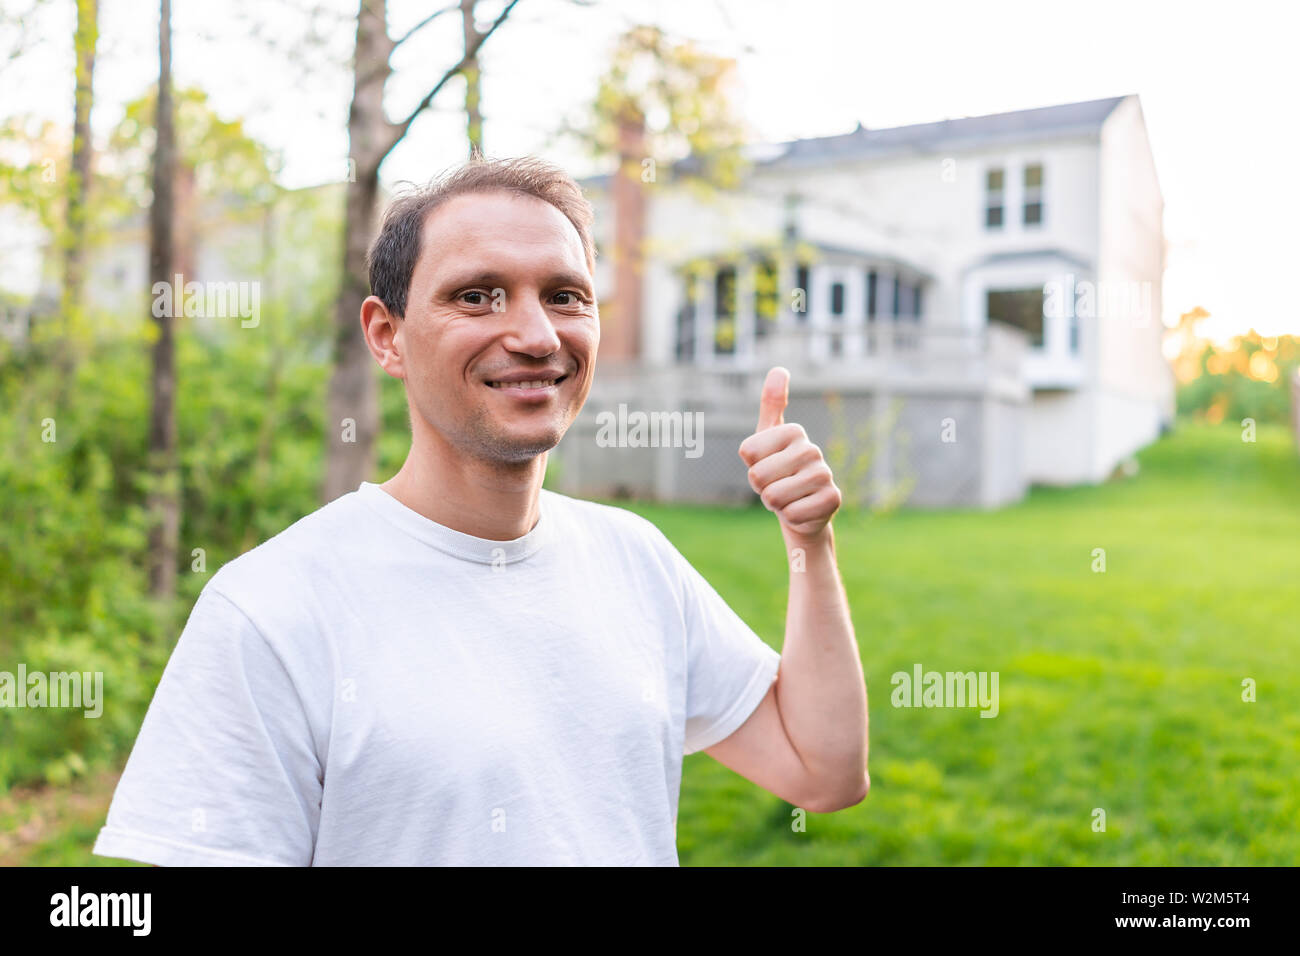 Junger Mann glückliche Eigenheimbesitzer in Herndon, Virginia, Fairfax County Wohngegend im Frühjahr oder Sommer Haus Hinterhof zeigt mit Thum Stockfoto